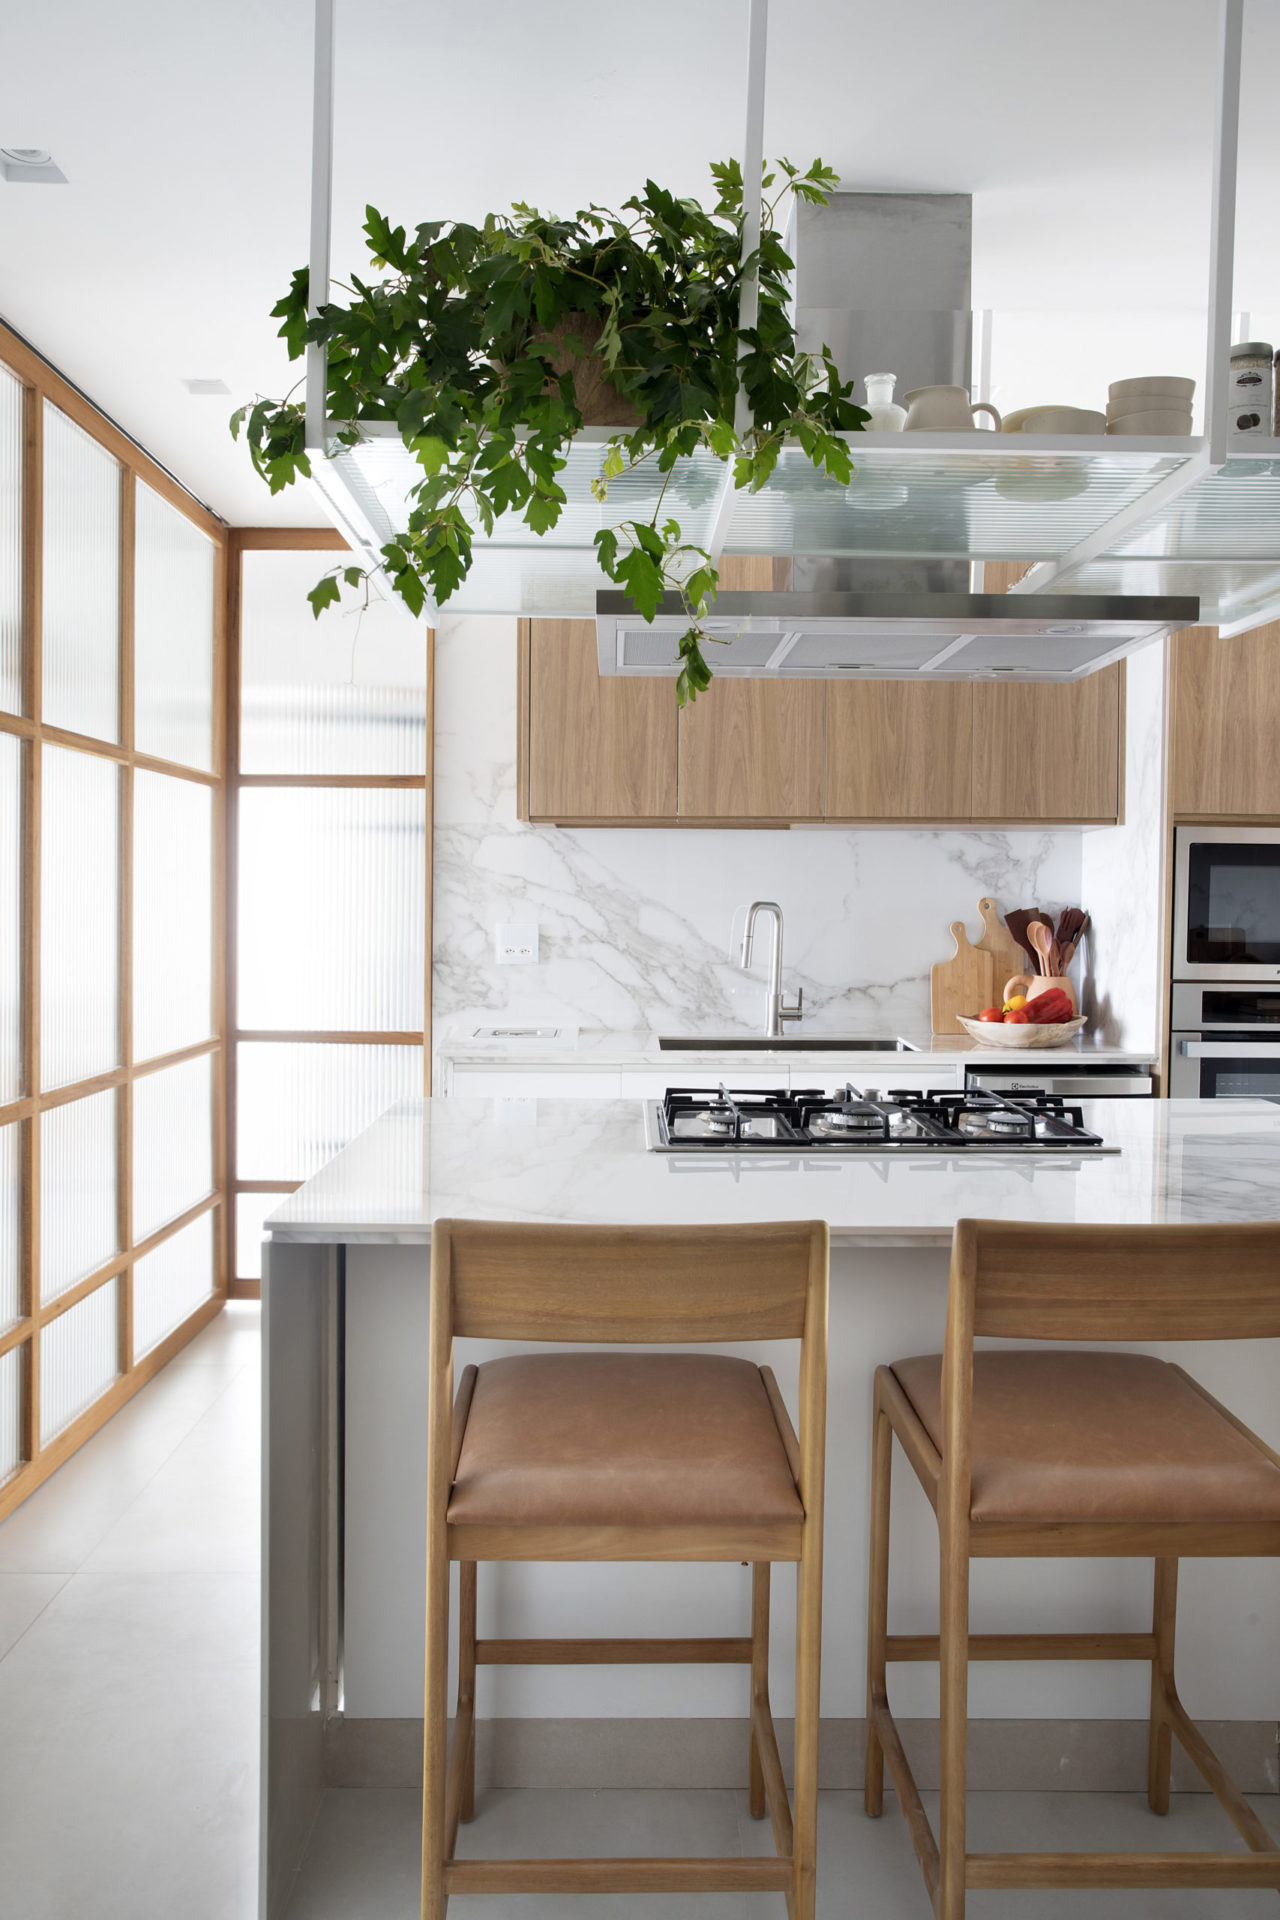 Cozinha claa, com revestimento inspirado no mármore, e portas de correr, que quando abertas, integram os ambientes